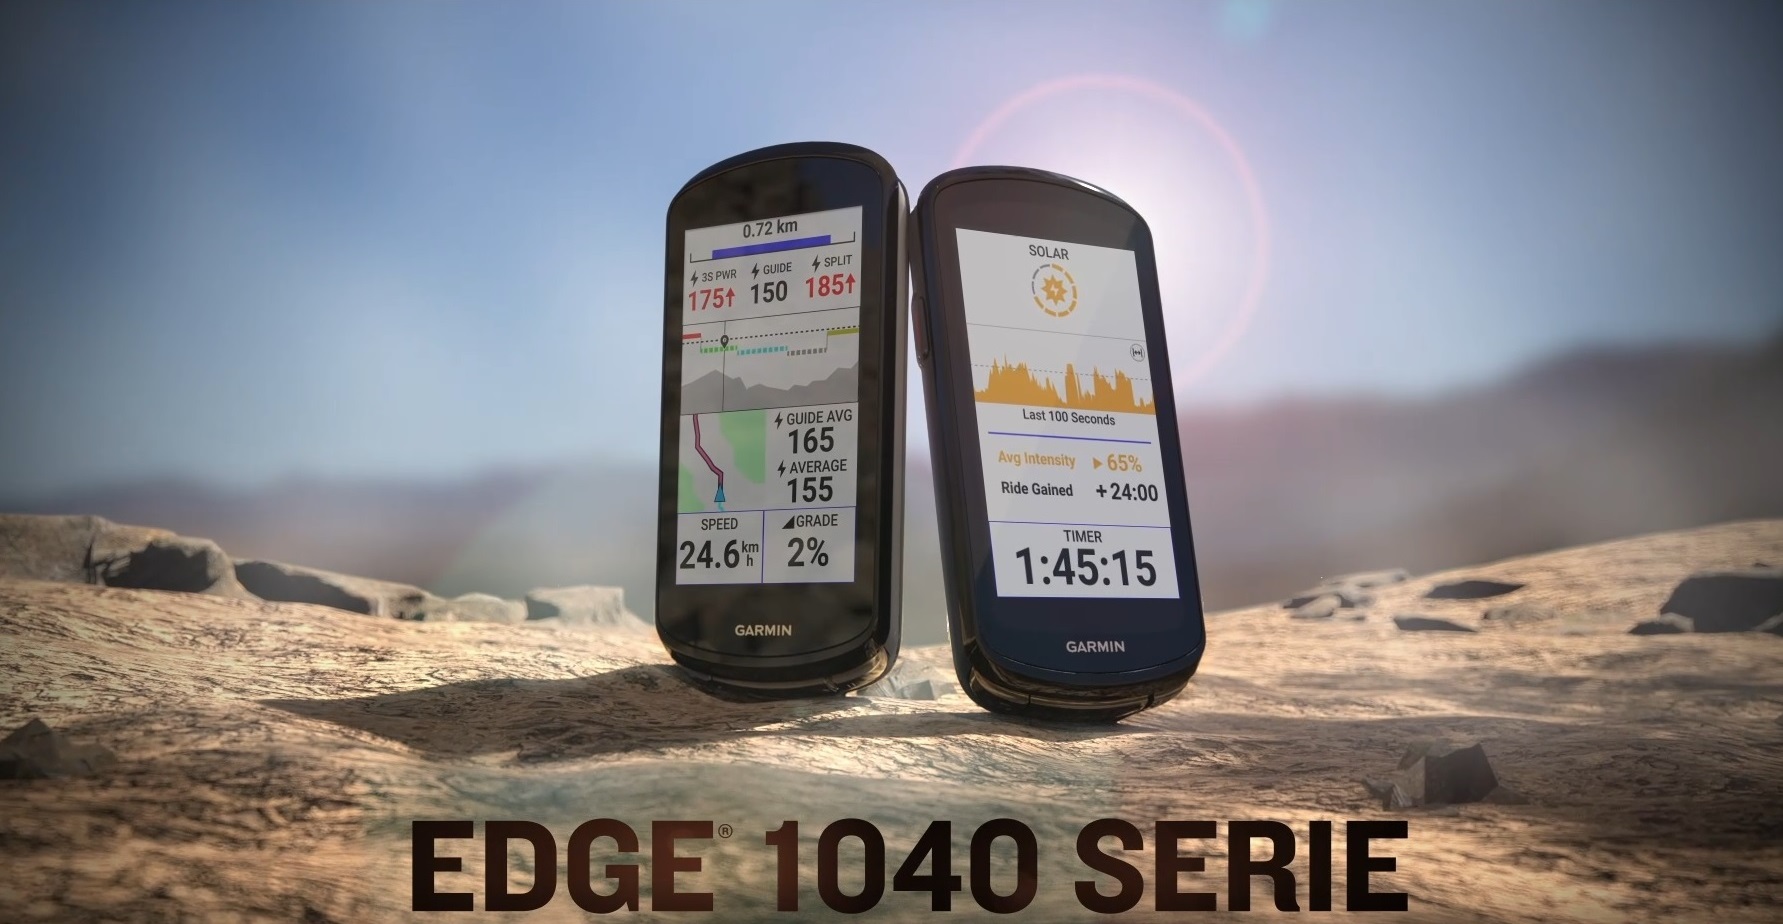 Beide Modelle der Edge 1040 Serie in der Wüste